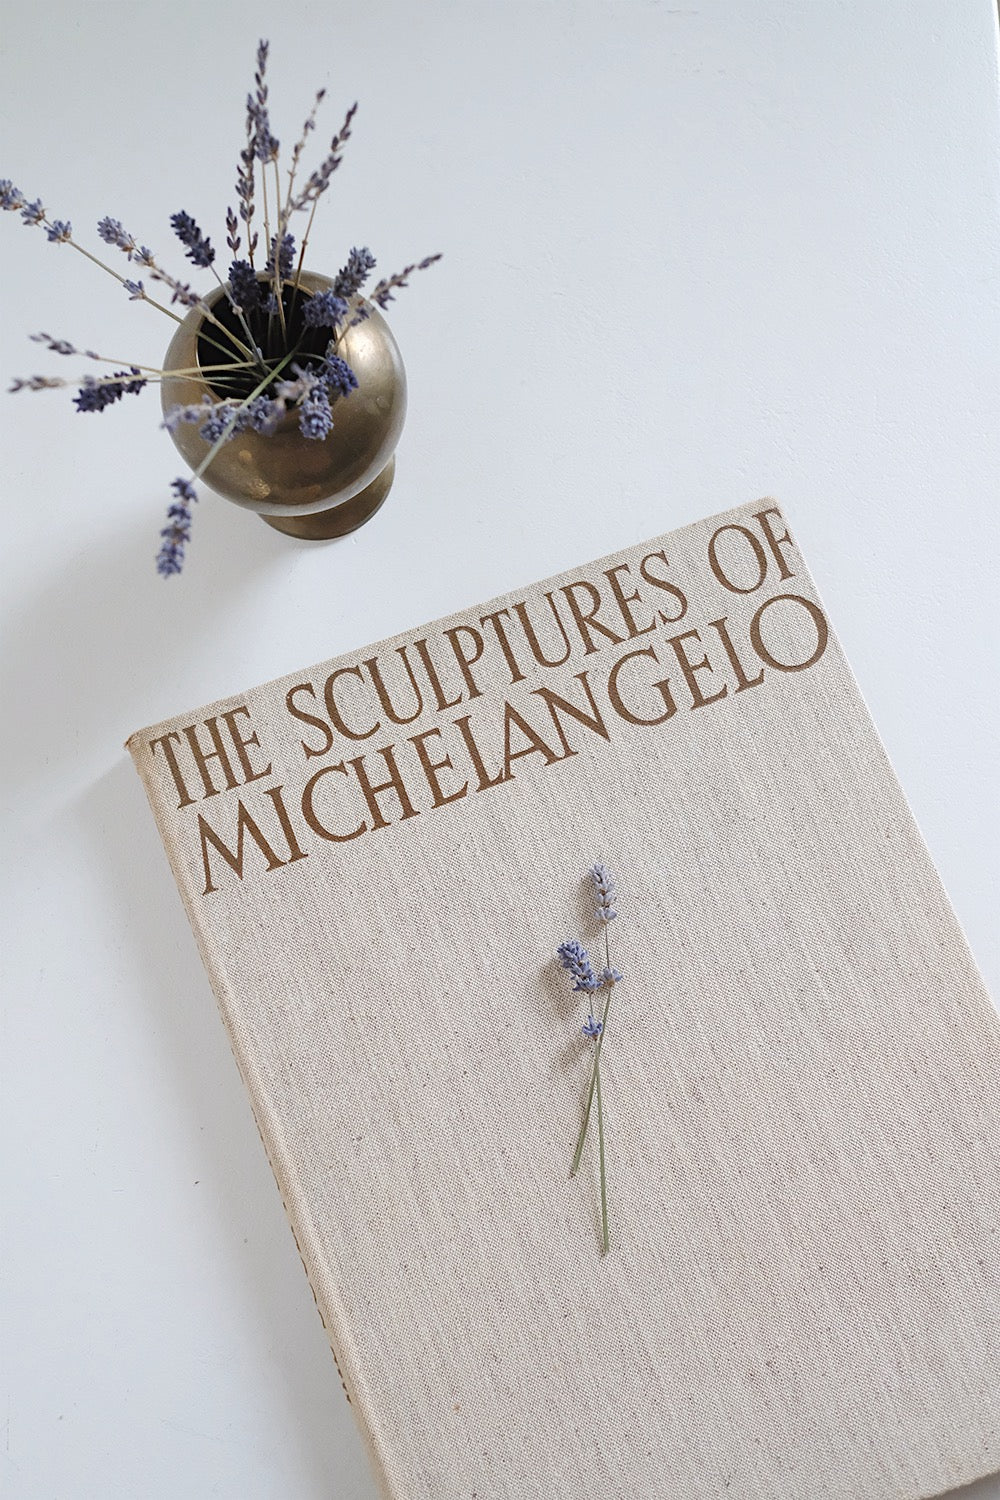 "the sculptures of Michaelangelo" book